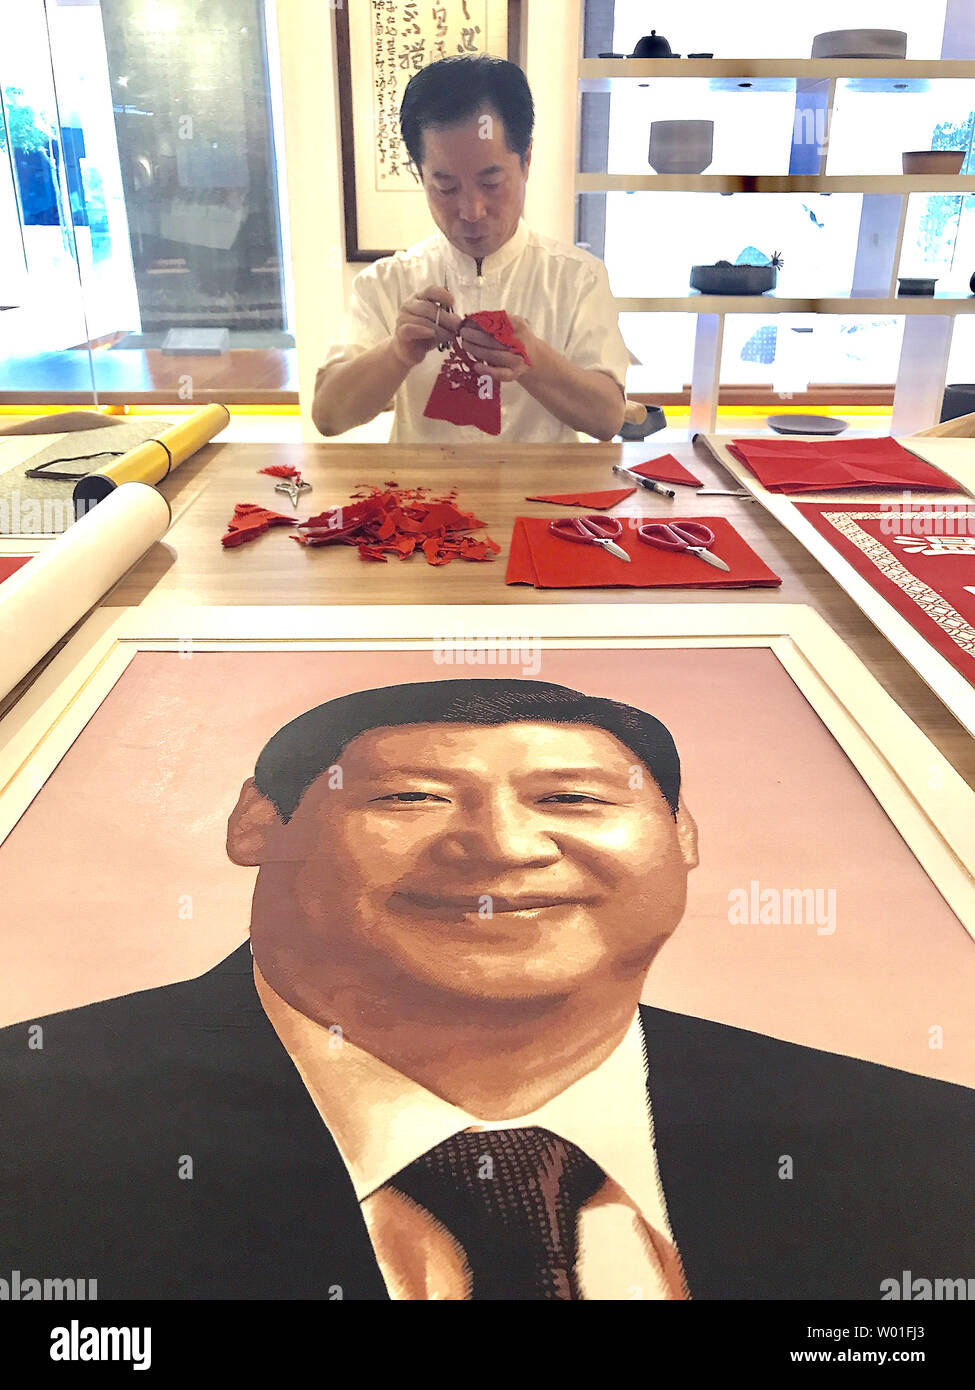 Un artista che lavora in uno stand, dove produce e vende iconica artigianato Cinese, così come un dipinto del Presidente cinese Xi Jinping, a Pechino il 12 settembre 2018. Xi ha creato la sua propria ideologia politica, in un passo verso il consolidamento della sua posizione nella parte superiore del Partito comunista. Foto di Stefano rasoio/UPI Foto Stock